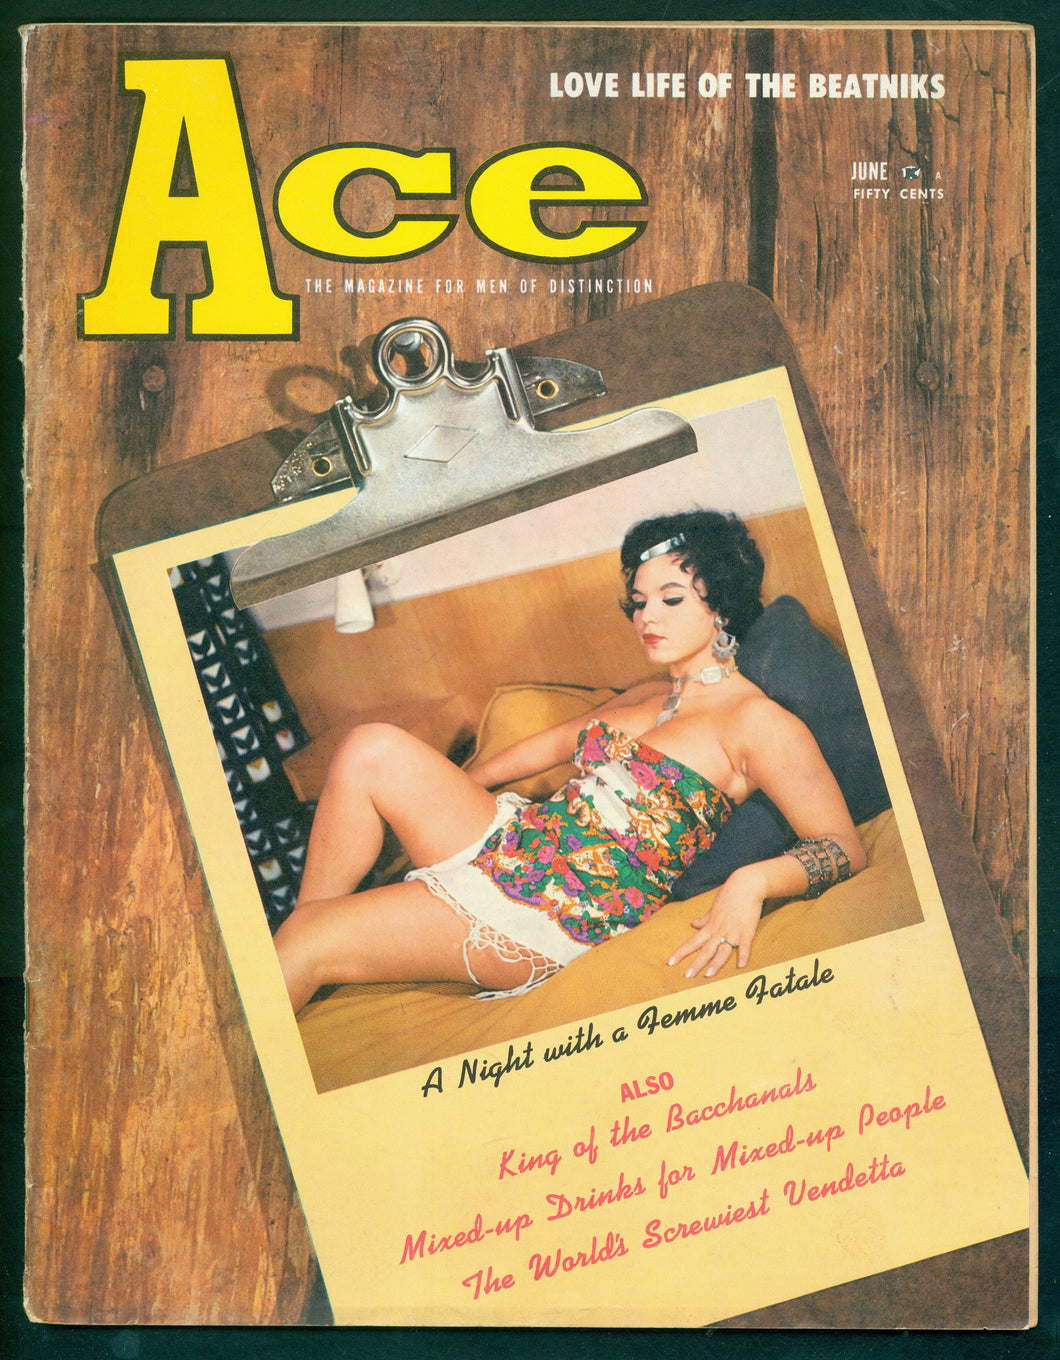 Ace Vol 4 No 1, June 1960